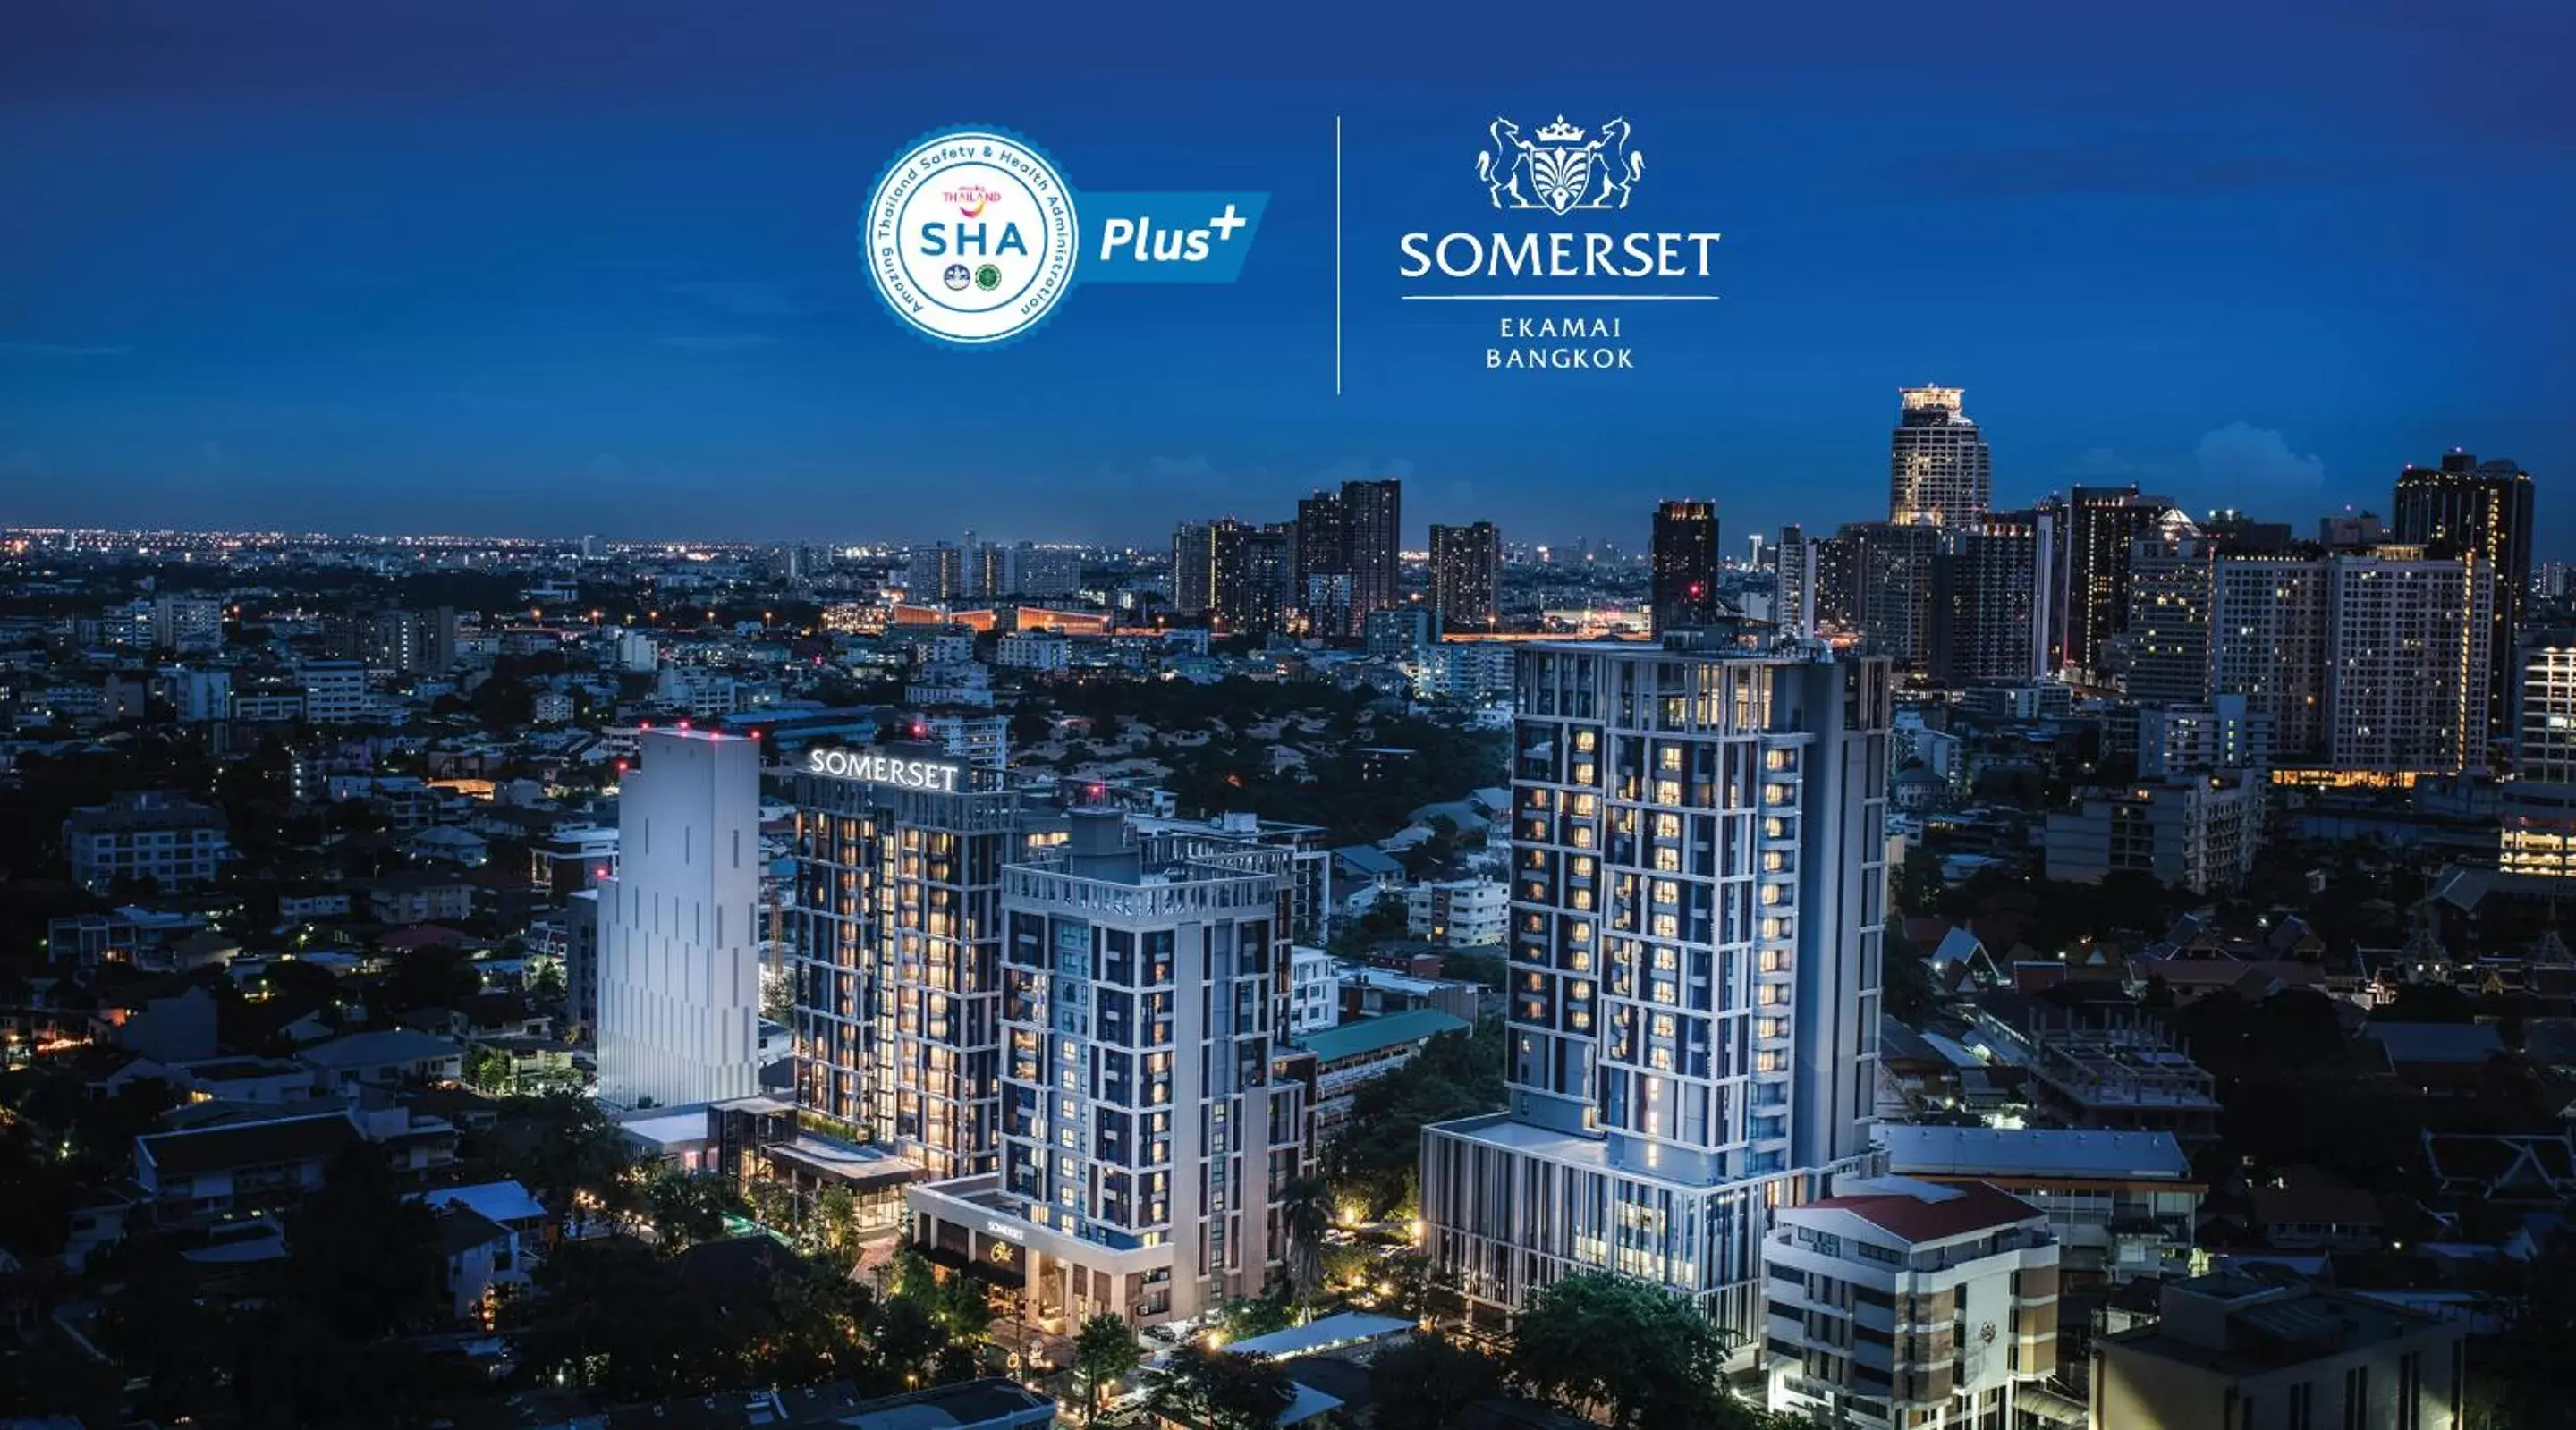 Logo/Certificate/Sign, Bird's-eye View in Somerset Ekamai Bangkok